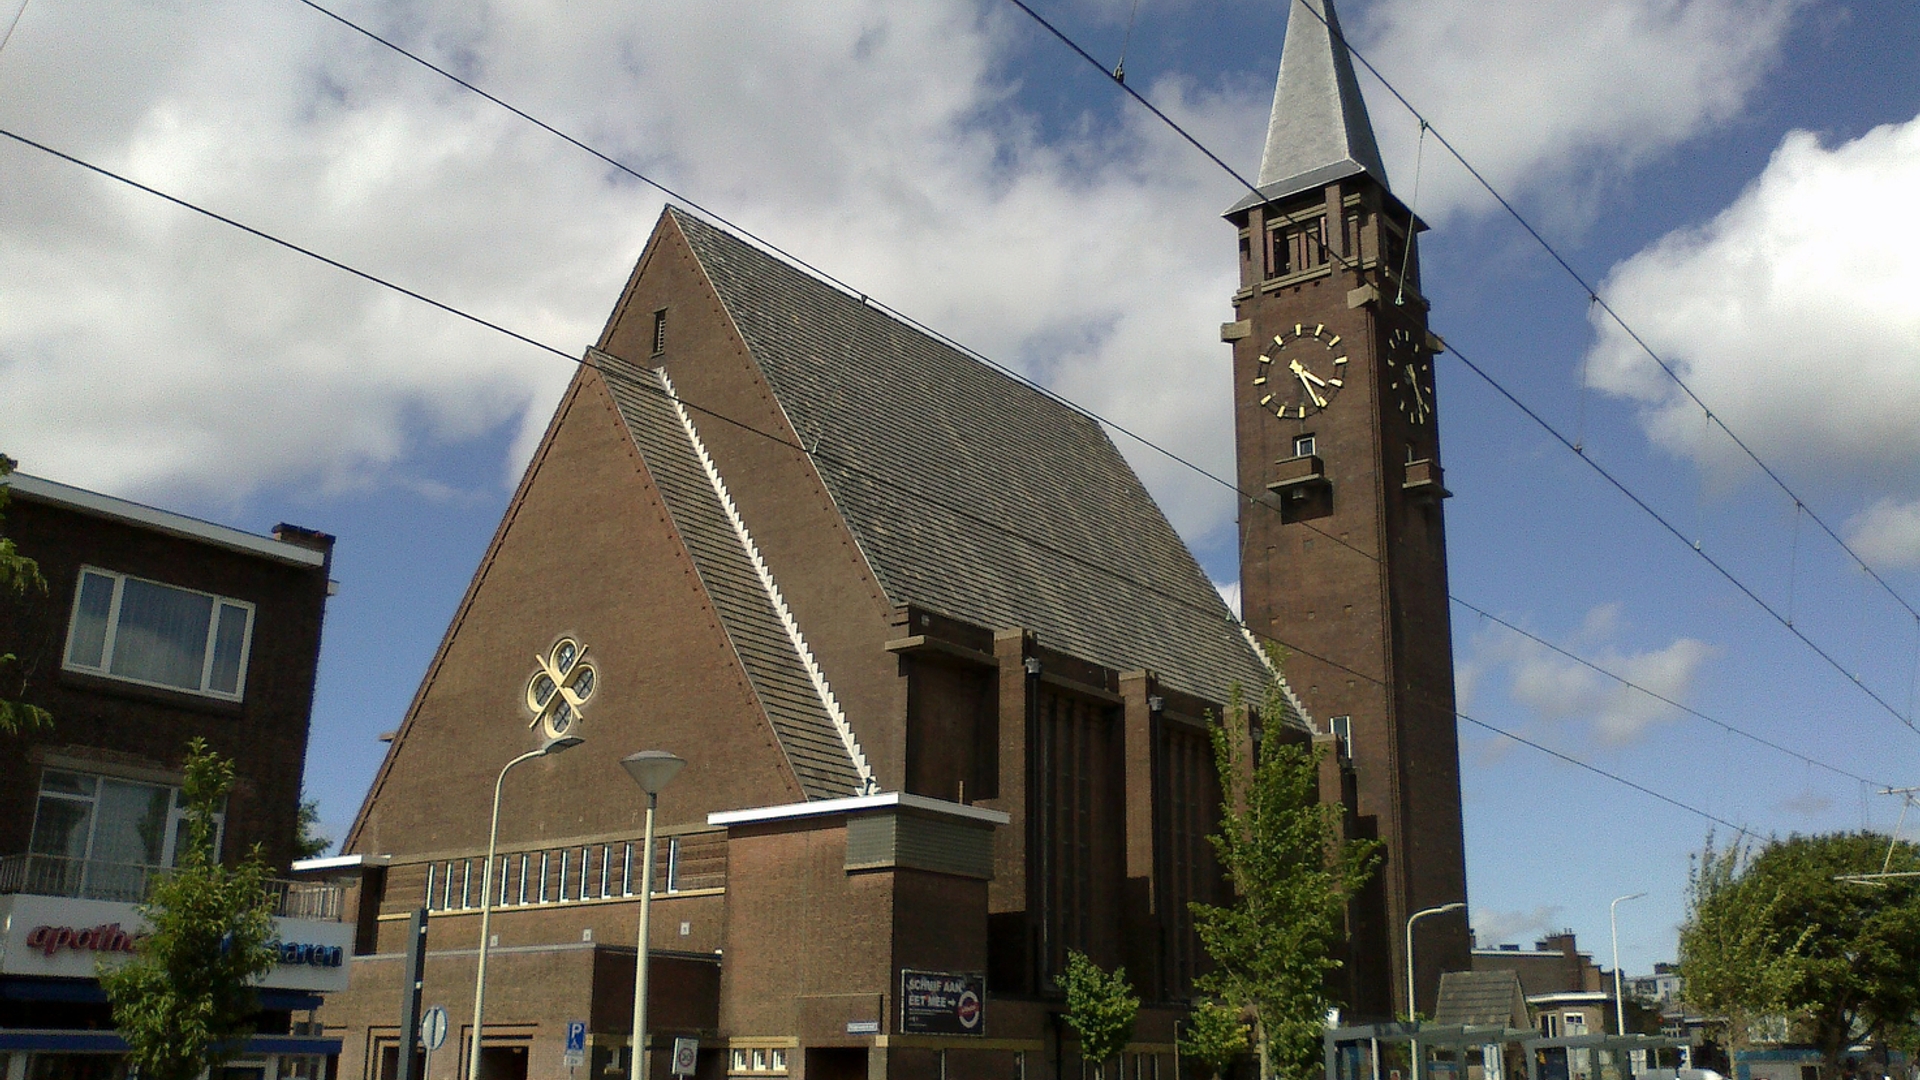 Bethlehem_Kerk_(church),_Laan_van_Meerdervoort,_The_Hague,_July_2017